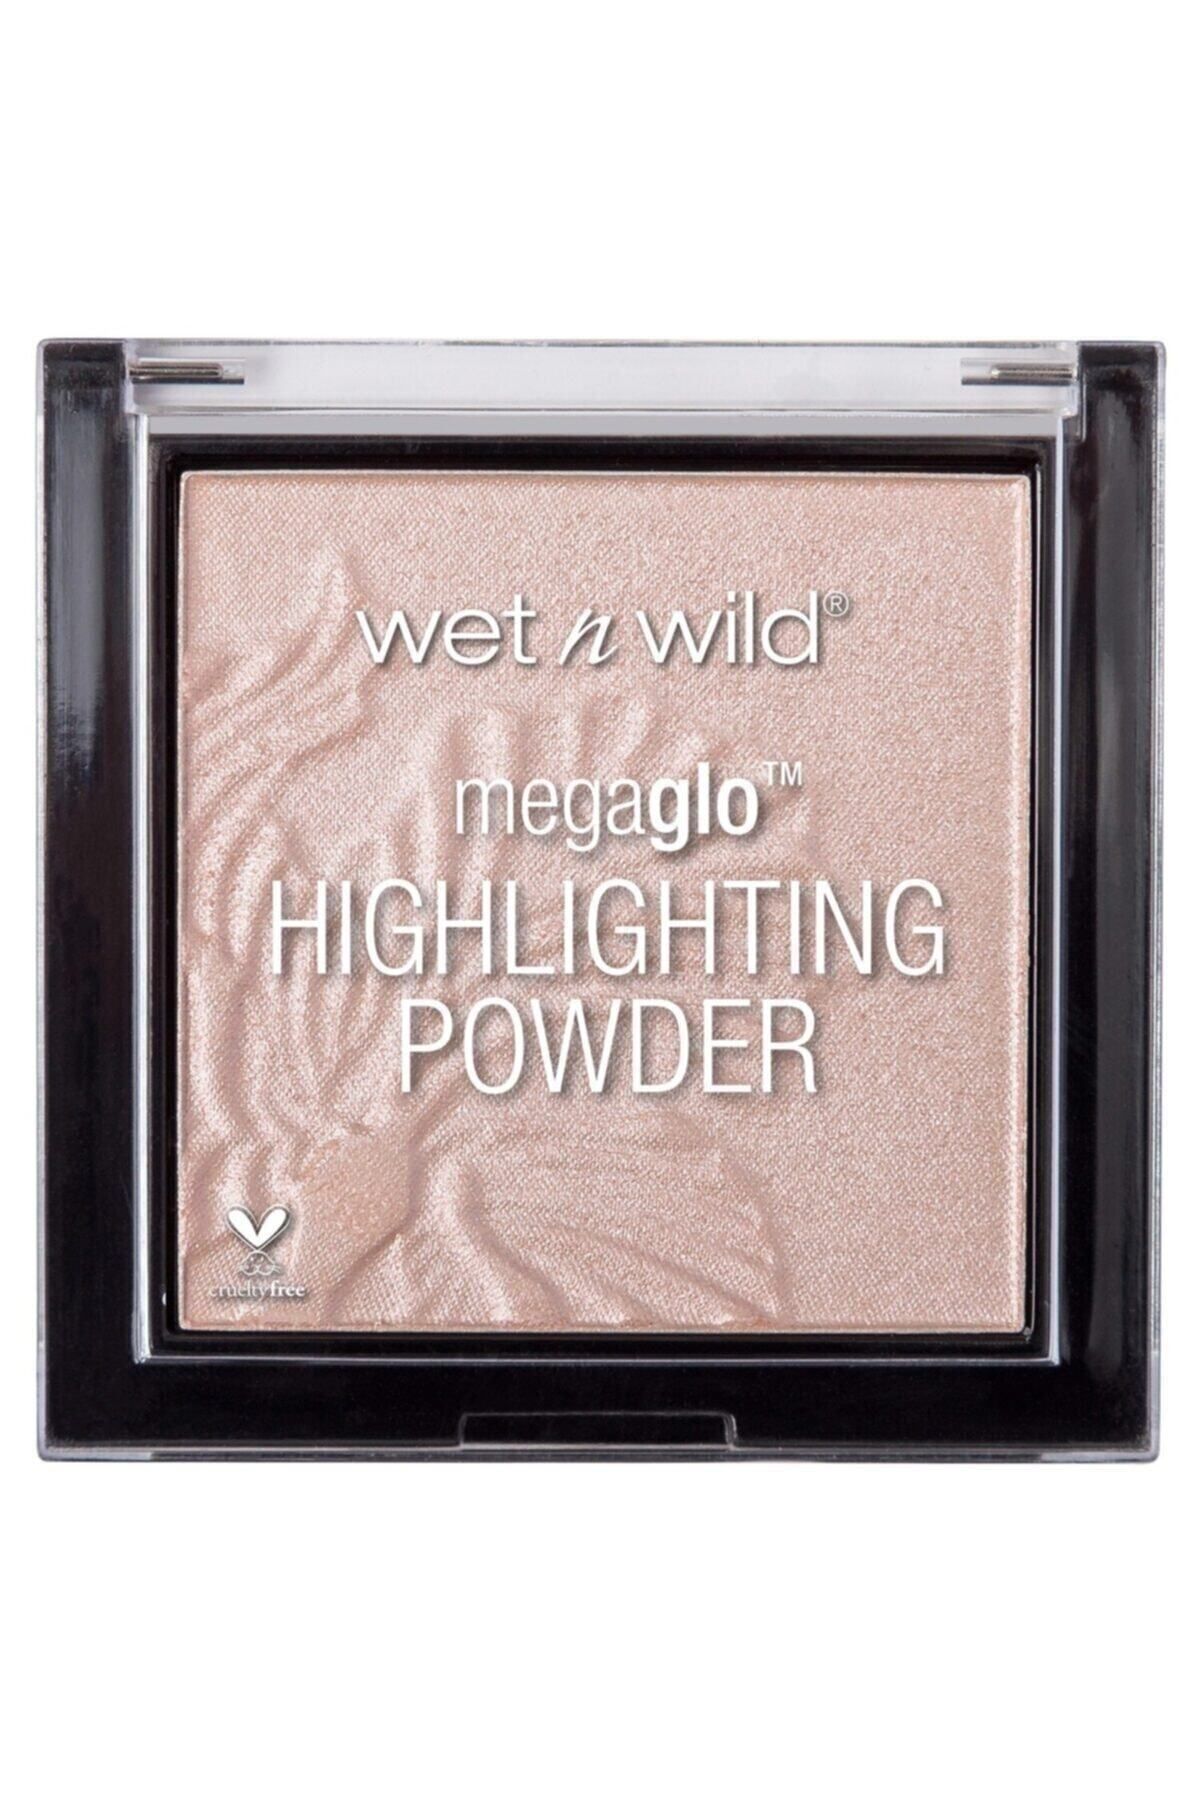 WET N WİLD Megaglo Highlighting Powder Aydınlatıcı